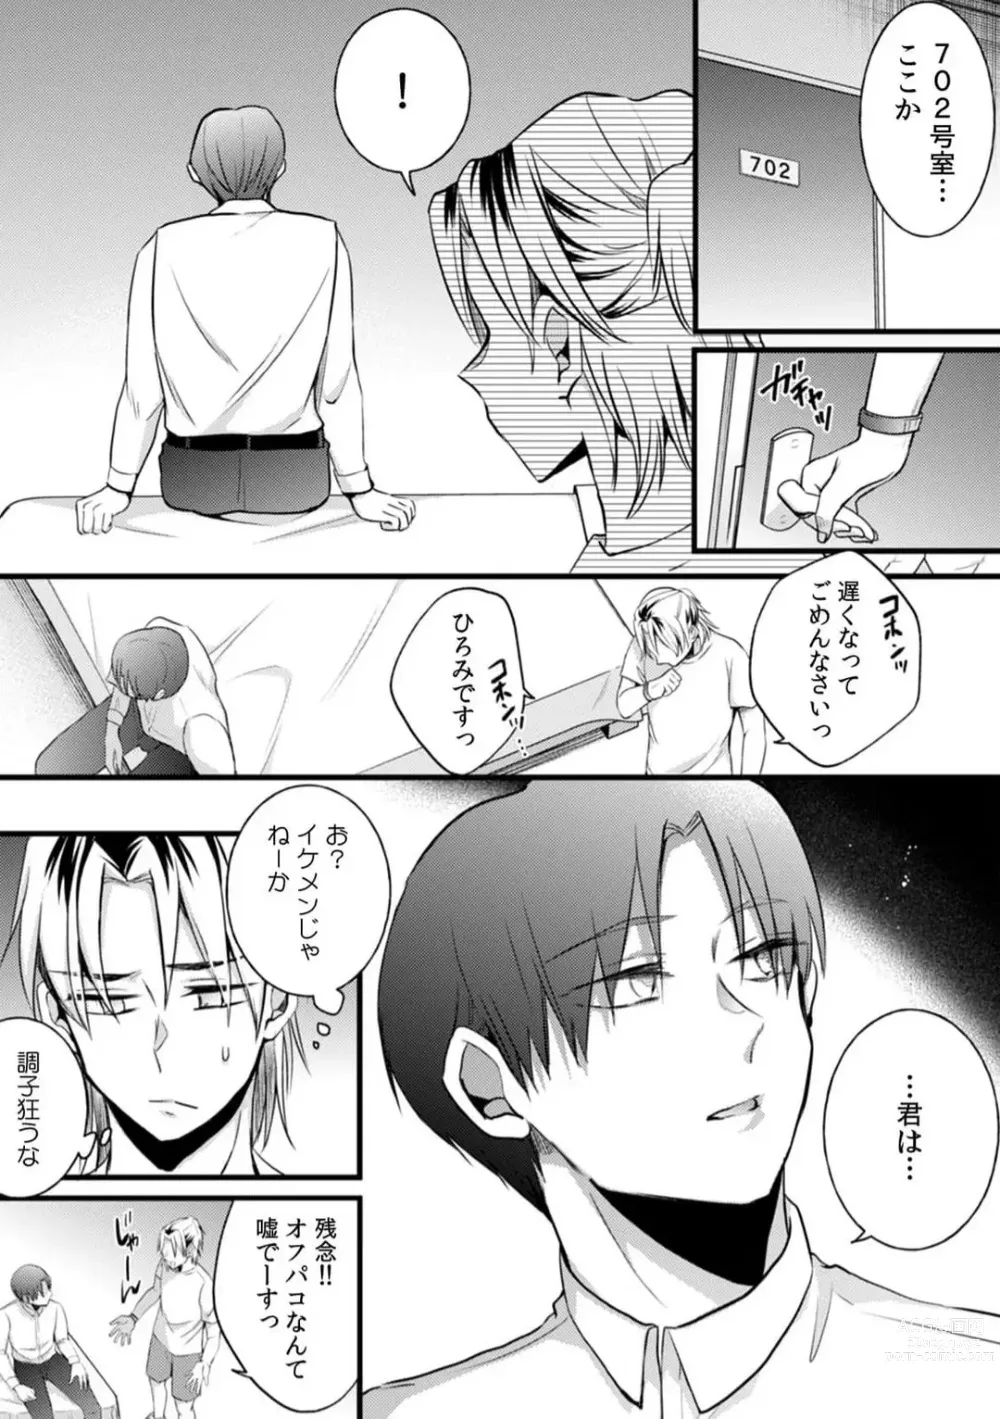 Page 5 of manga Ore no Naka de... Itte Kudasai...